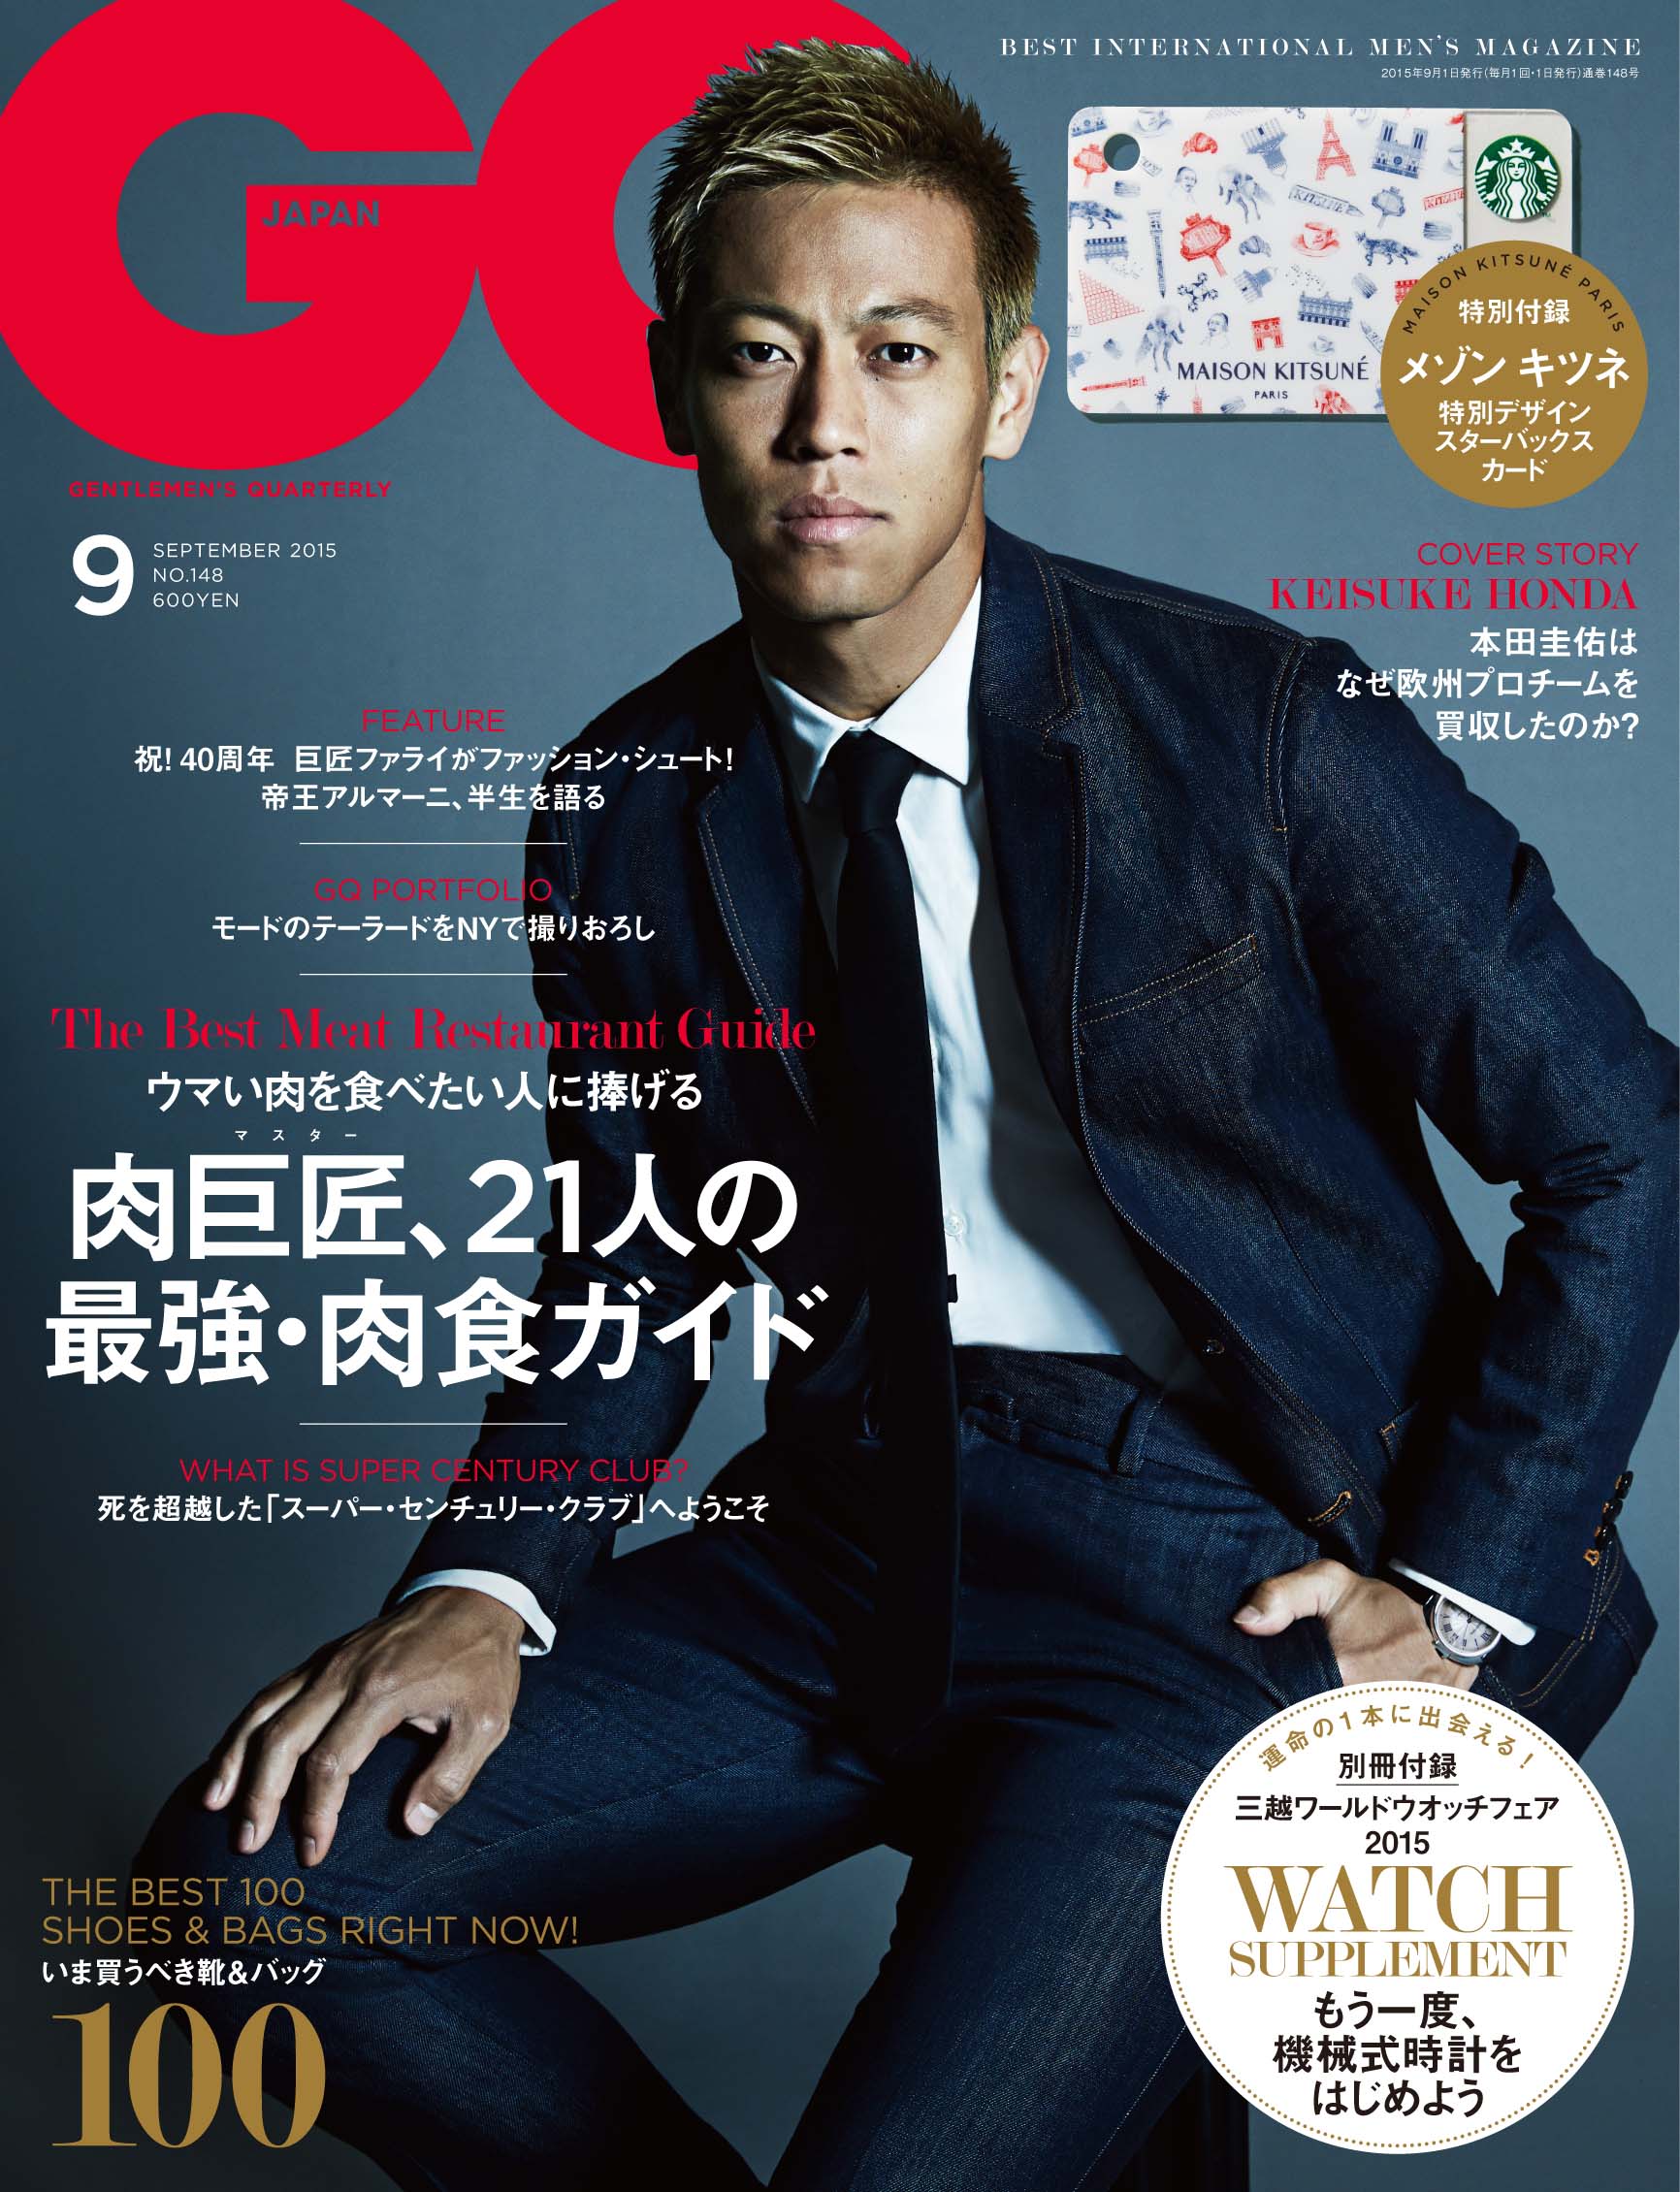 Gq Japan 15年9月号 7月24日発売 日本代表 本田圭佑 に独占インタビュー なぜ欧州プロサッカーチームを買収したのか コンデナスト ジャパンのプレスリリース